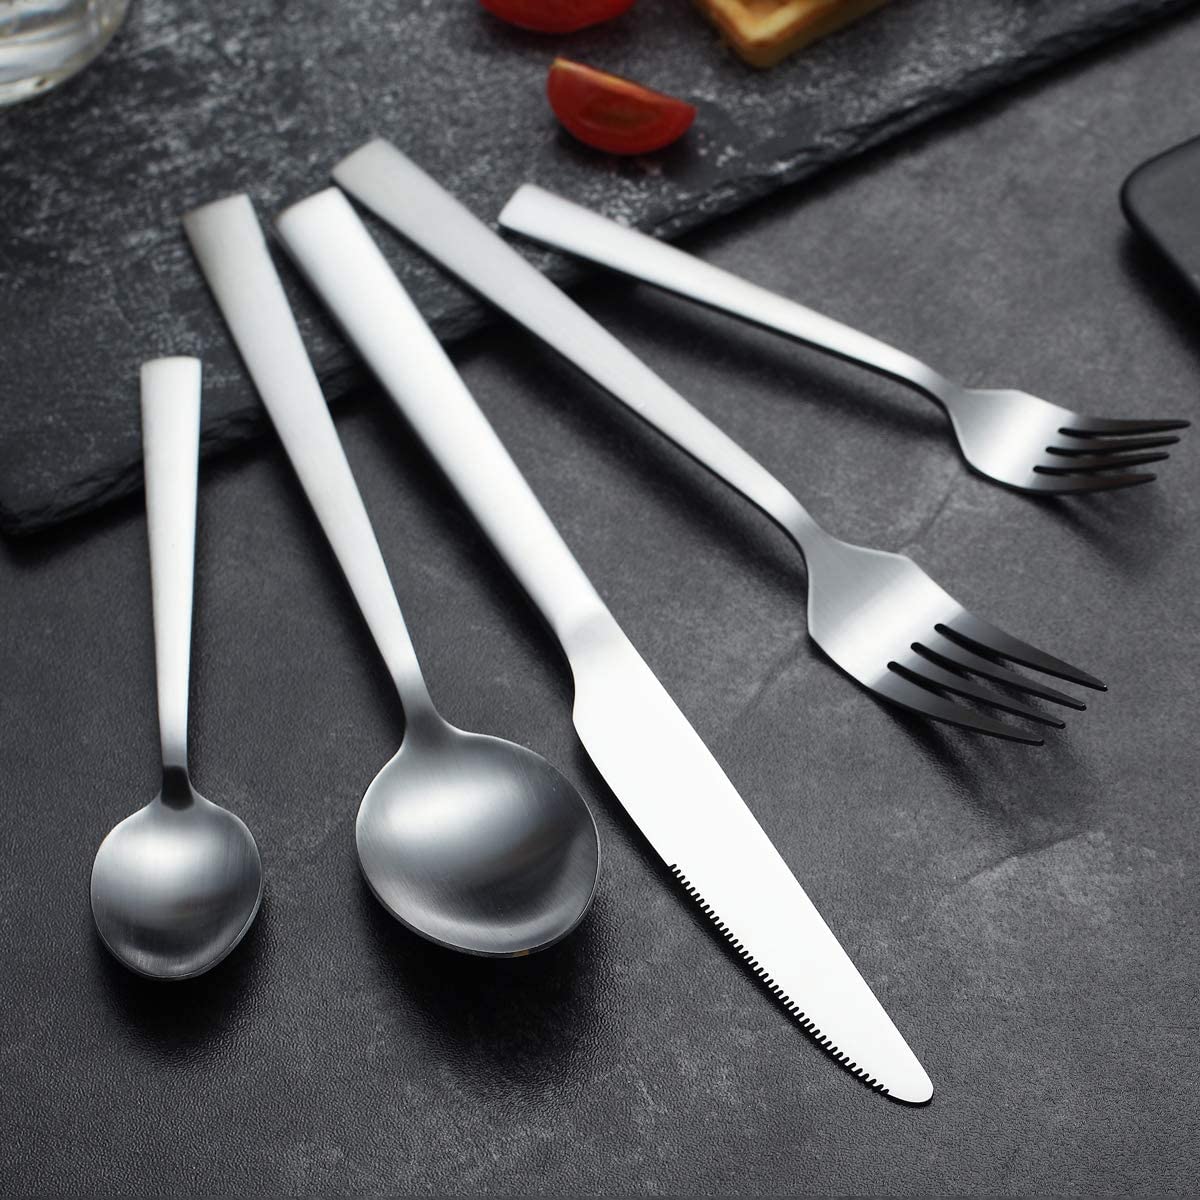 US$ 42.99 - 30-Piece Mat Cutlery Set, Service for 6 People -  m.berglander.com